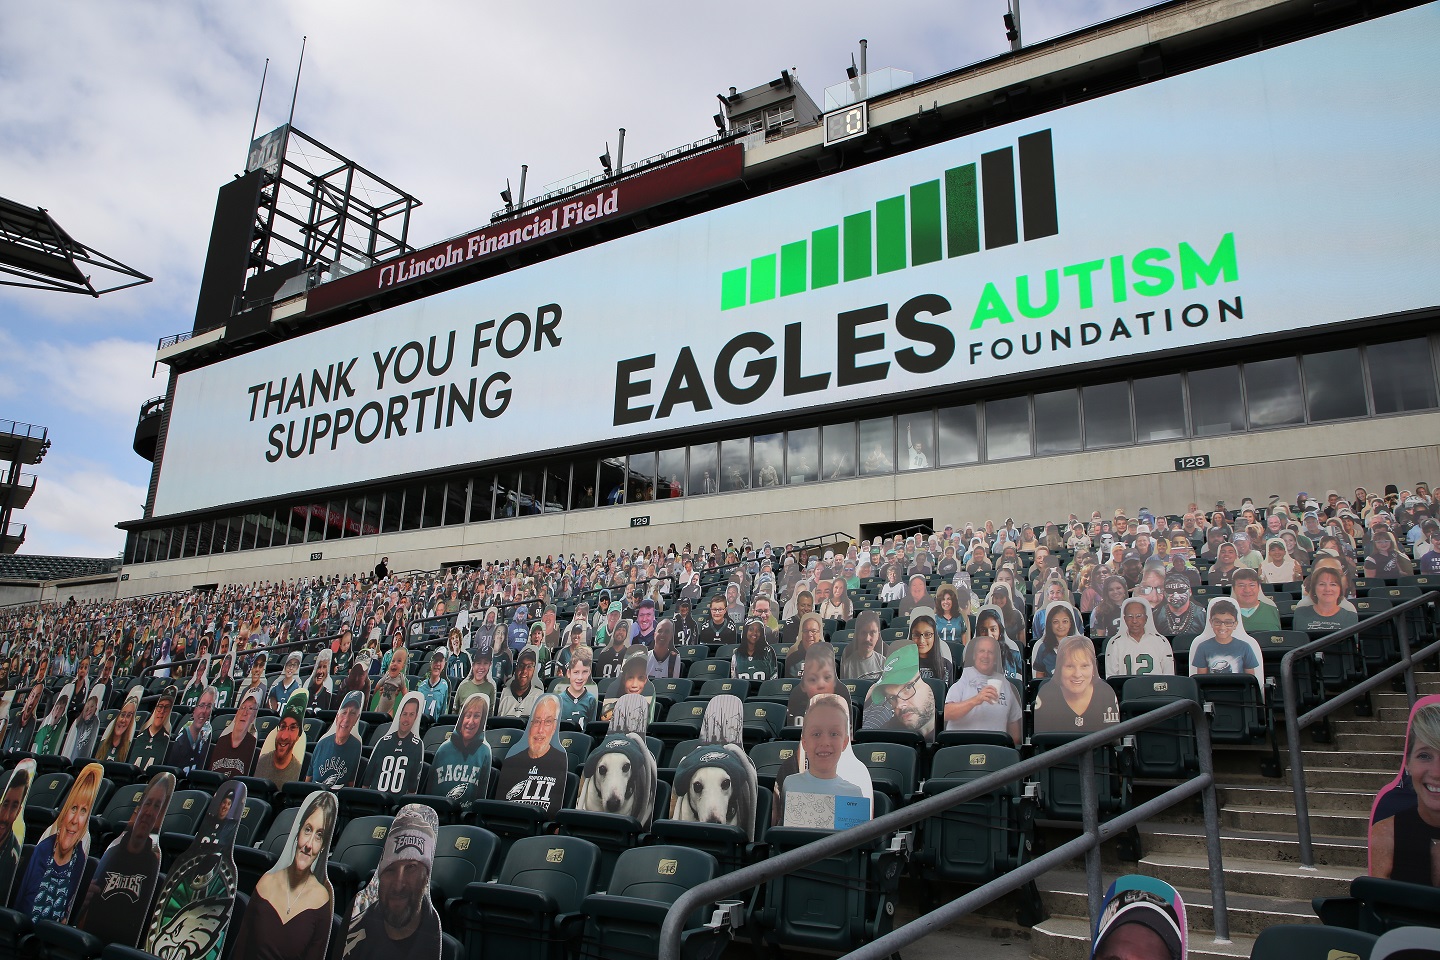 Eagles Autism Foundation distributes millions through “rigorous